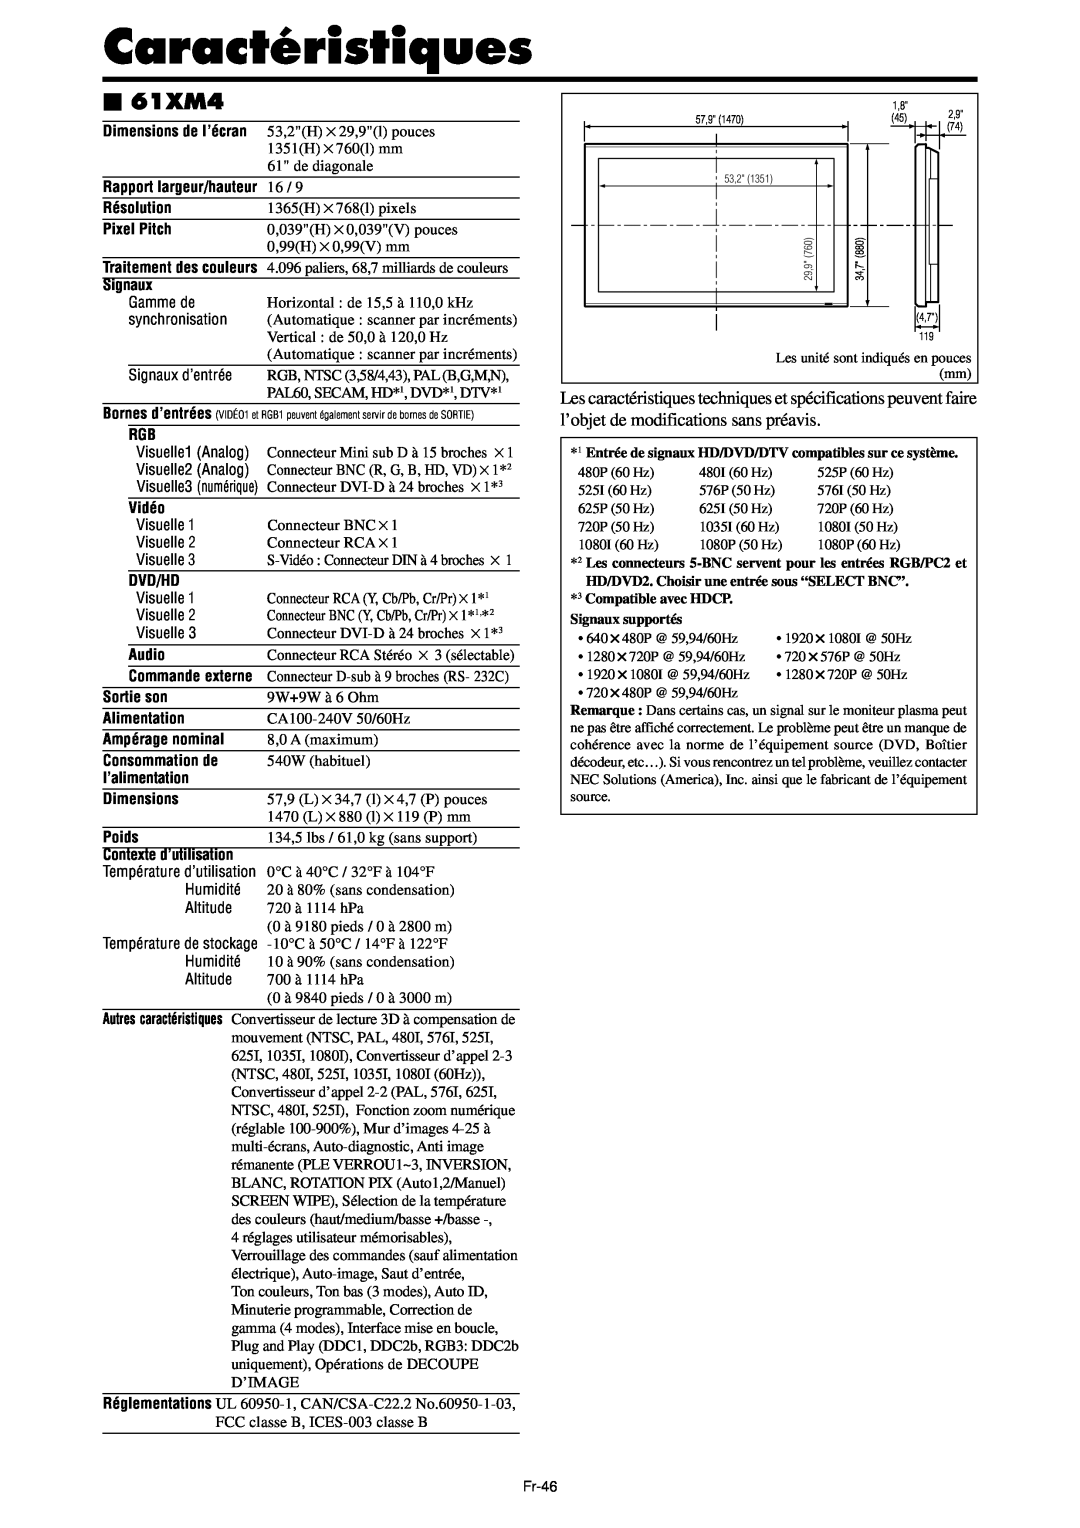 NEC PX-42XM4A manual Caractéristiques, 61XM4, Entrée de signaux HD/DVD/DTV compatibles sur ce système, Signaux supportés 